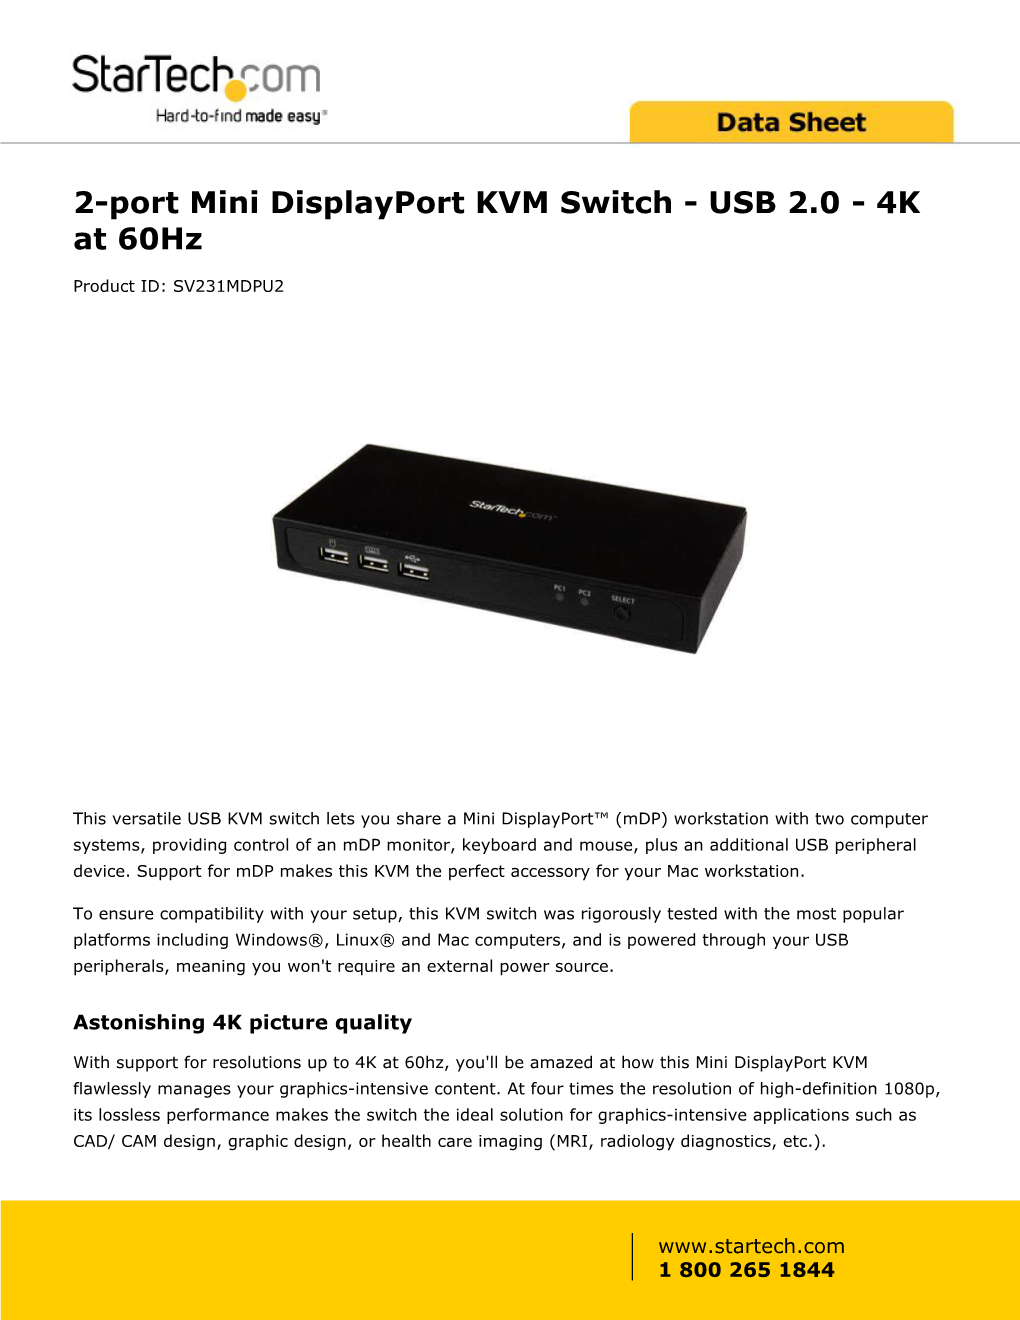 2-Port Mini Displayport KVM Switch - USB 2.0 - 4K at 60Hz